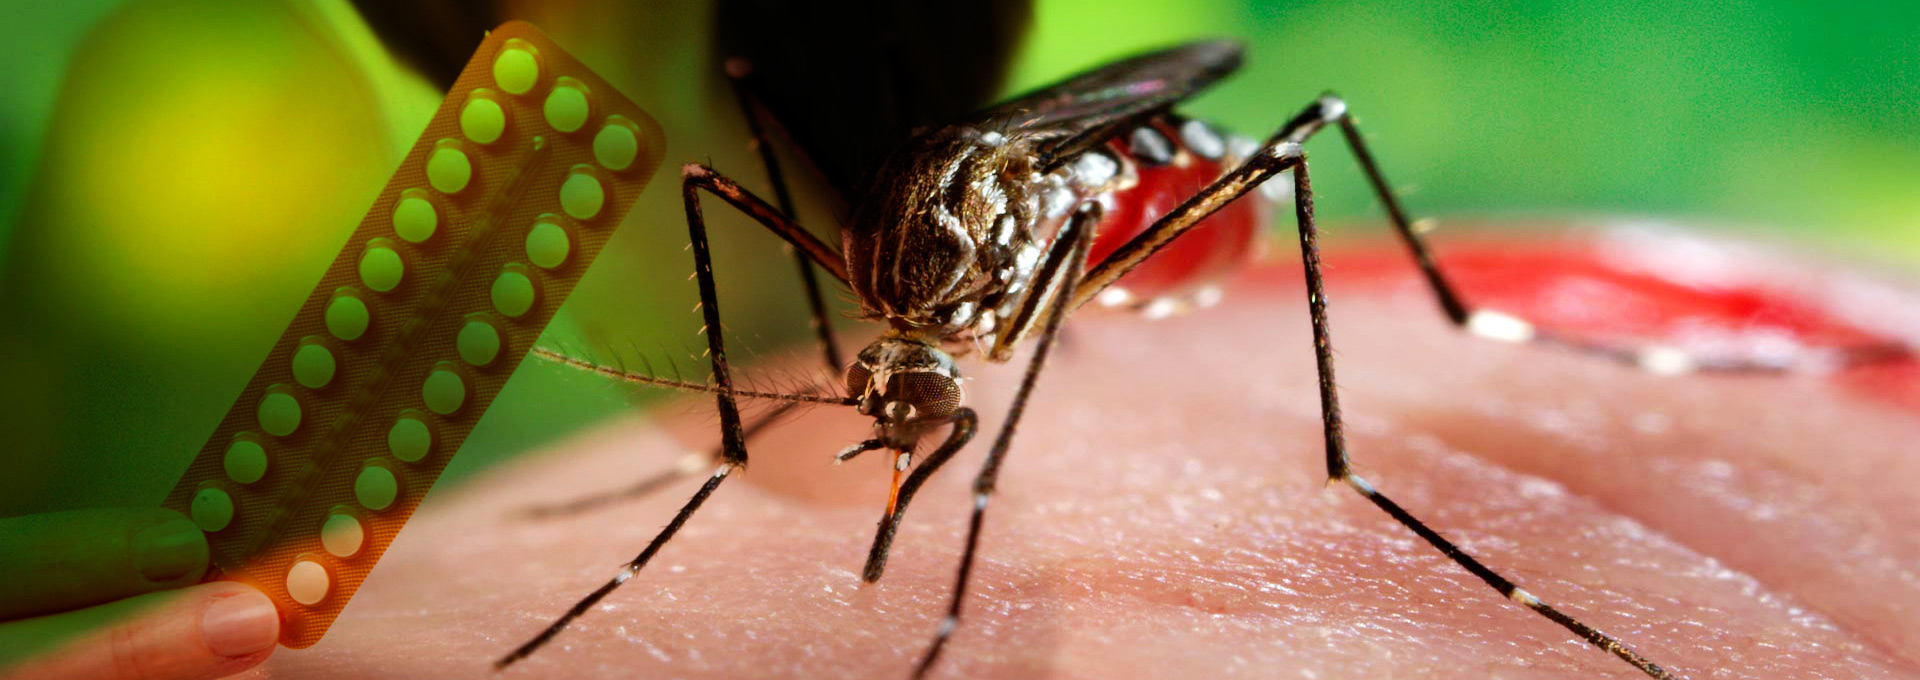 Mosquito Aedes aegypti em fotomontagem com cartela de pílulas anticoncepcionais